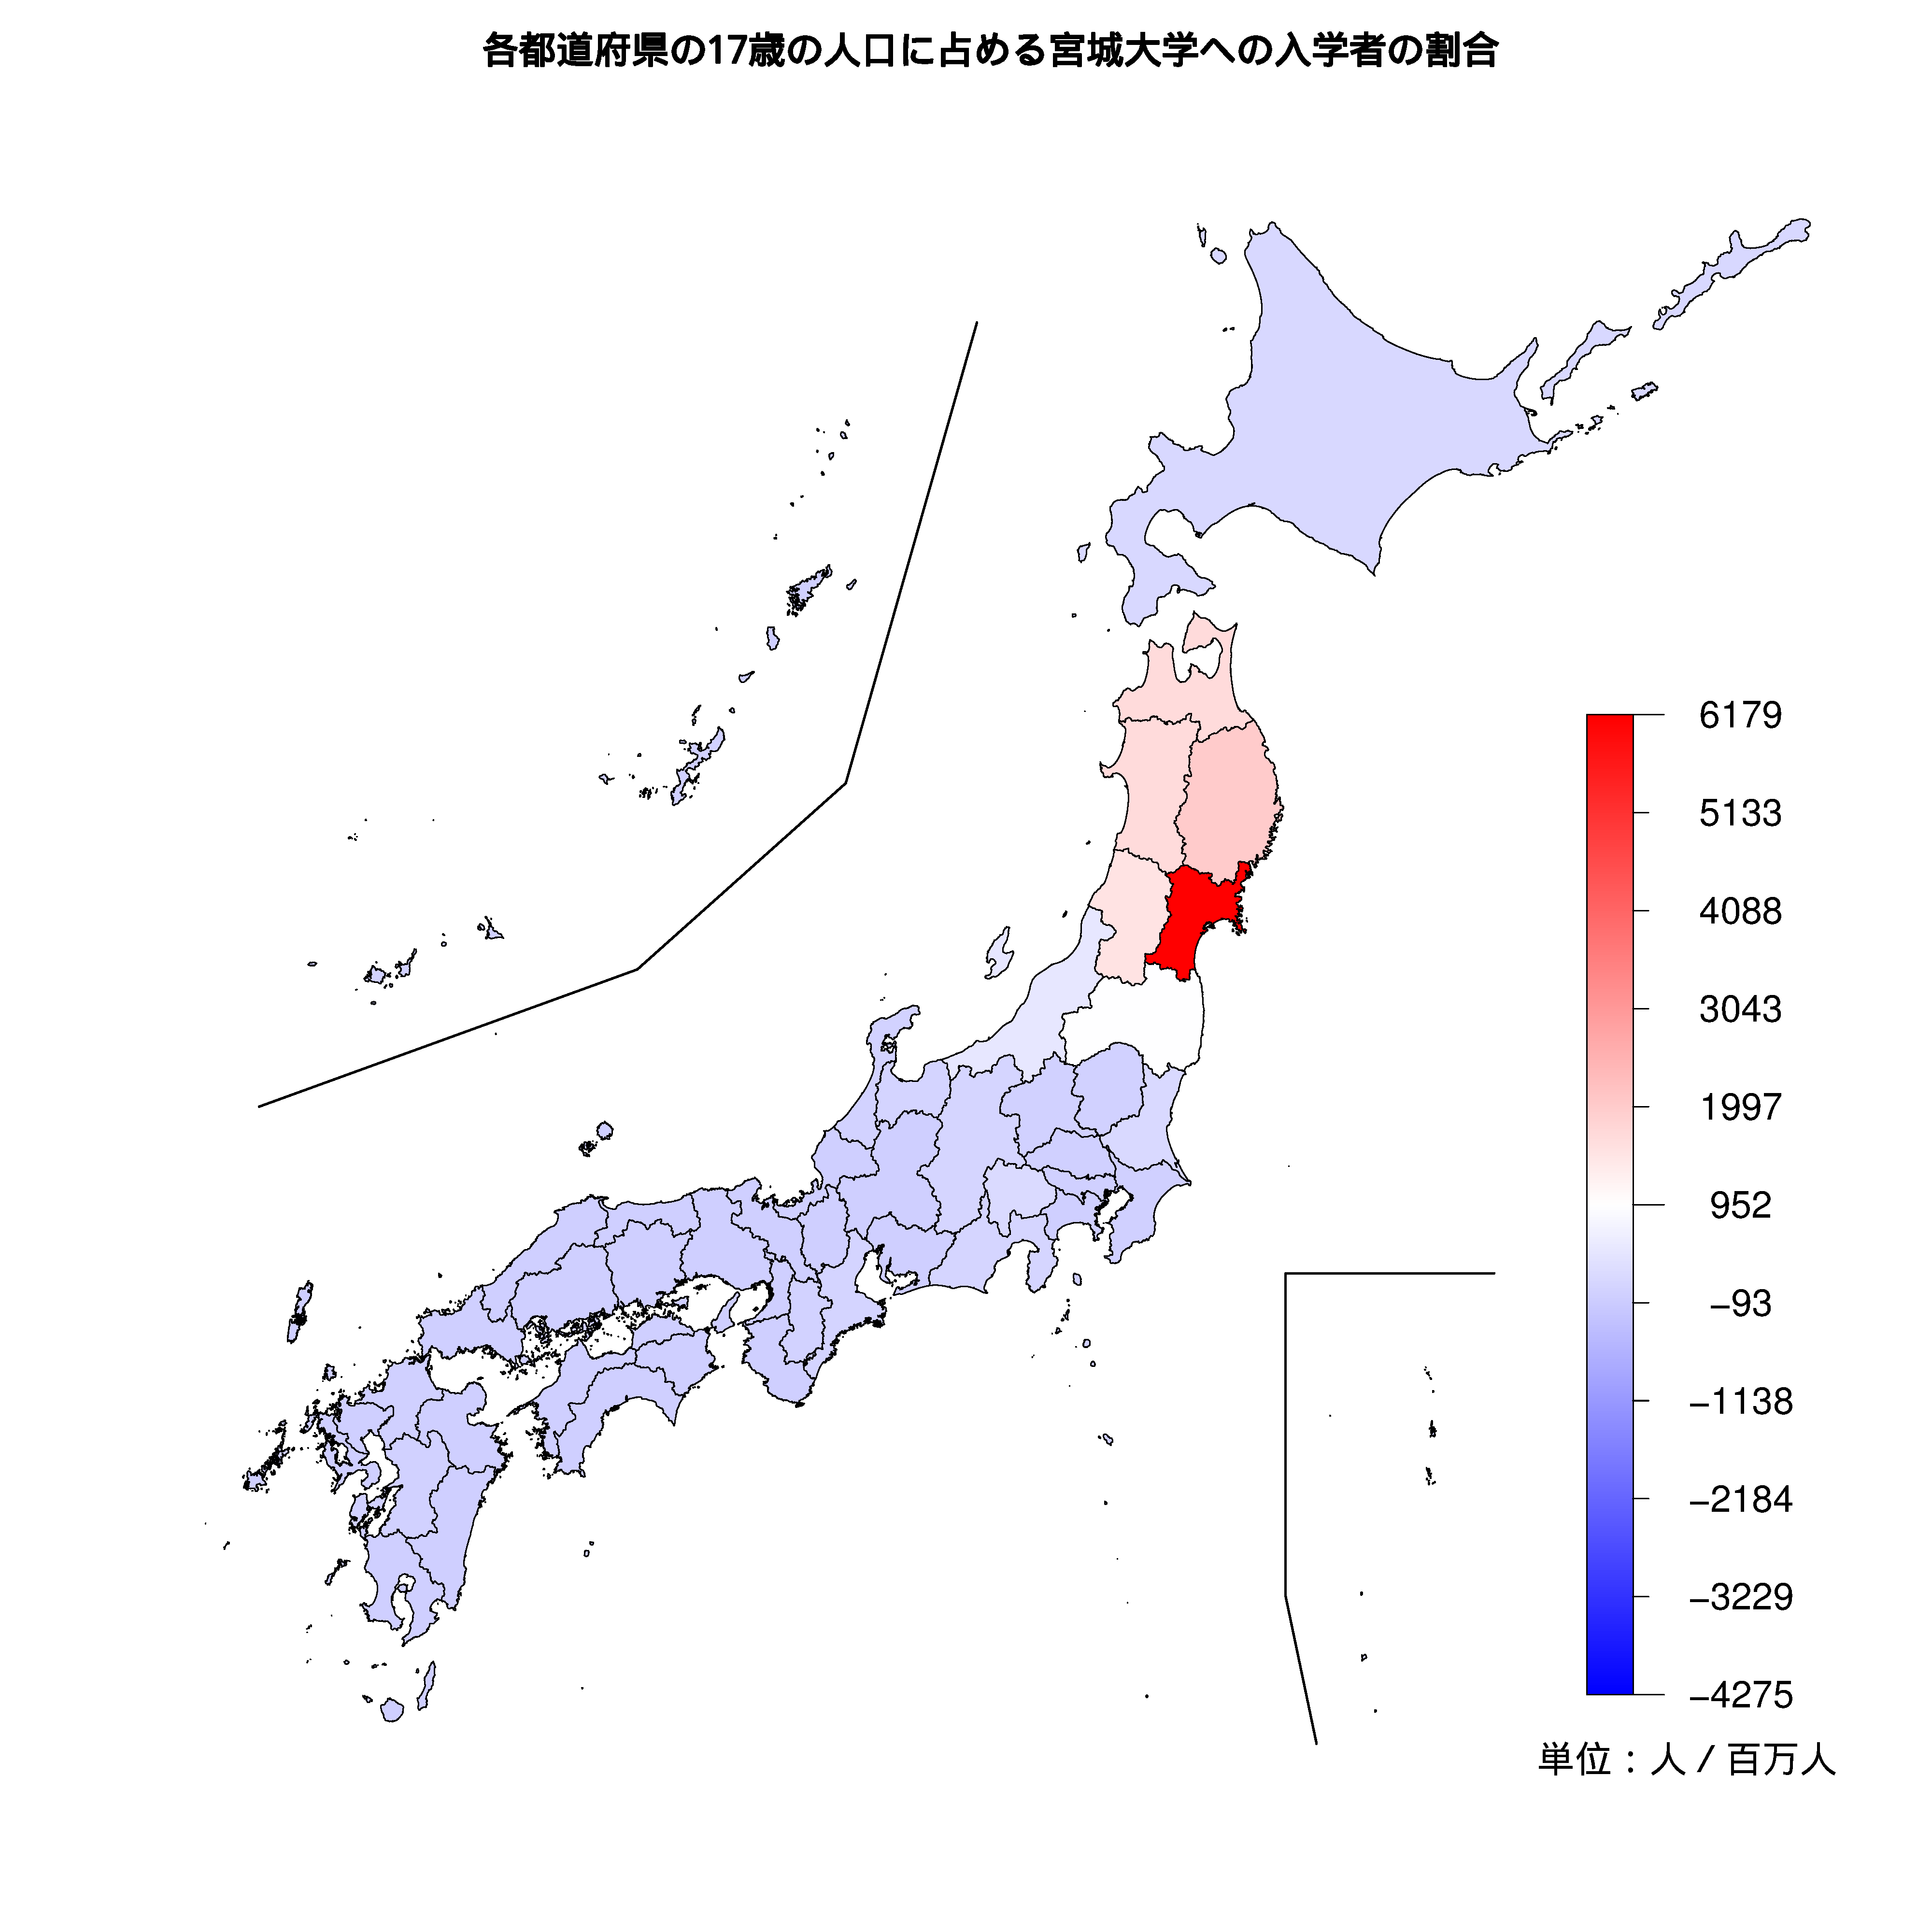 宮城大学への入学者が多い都道府県の色分け地図